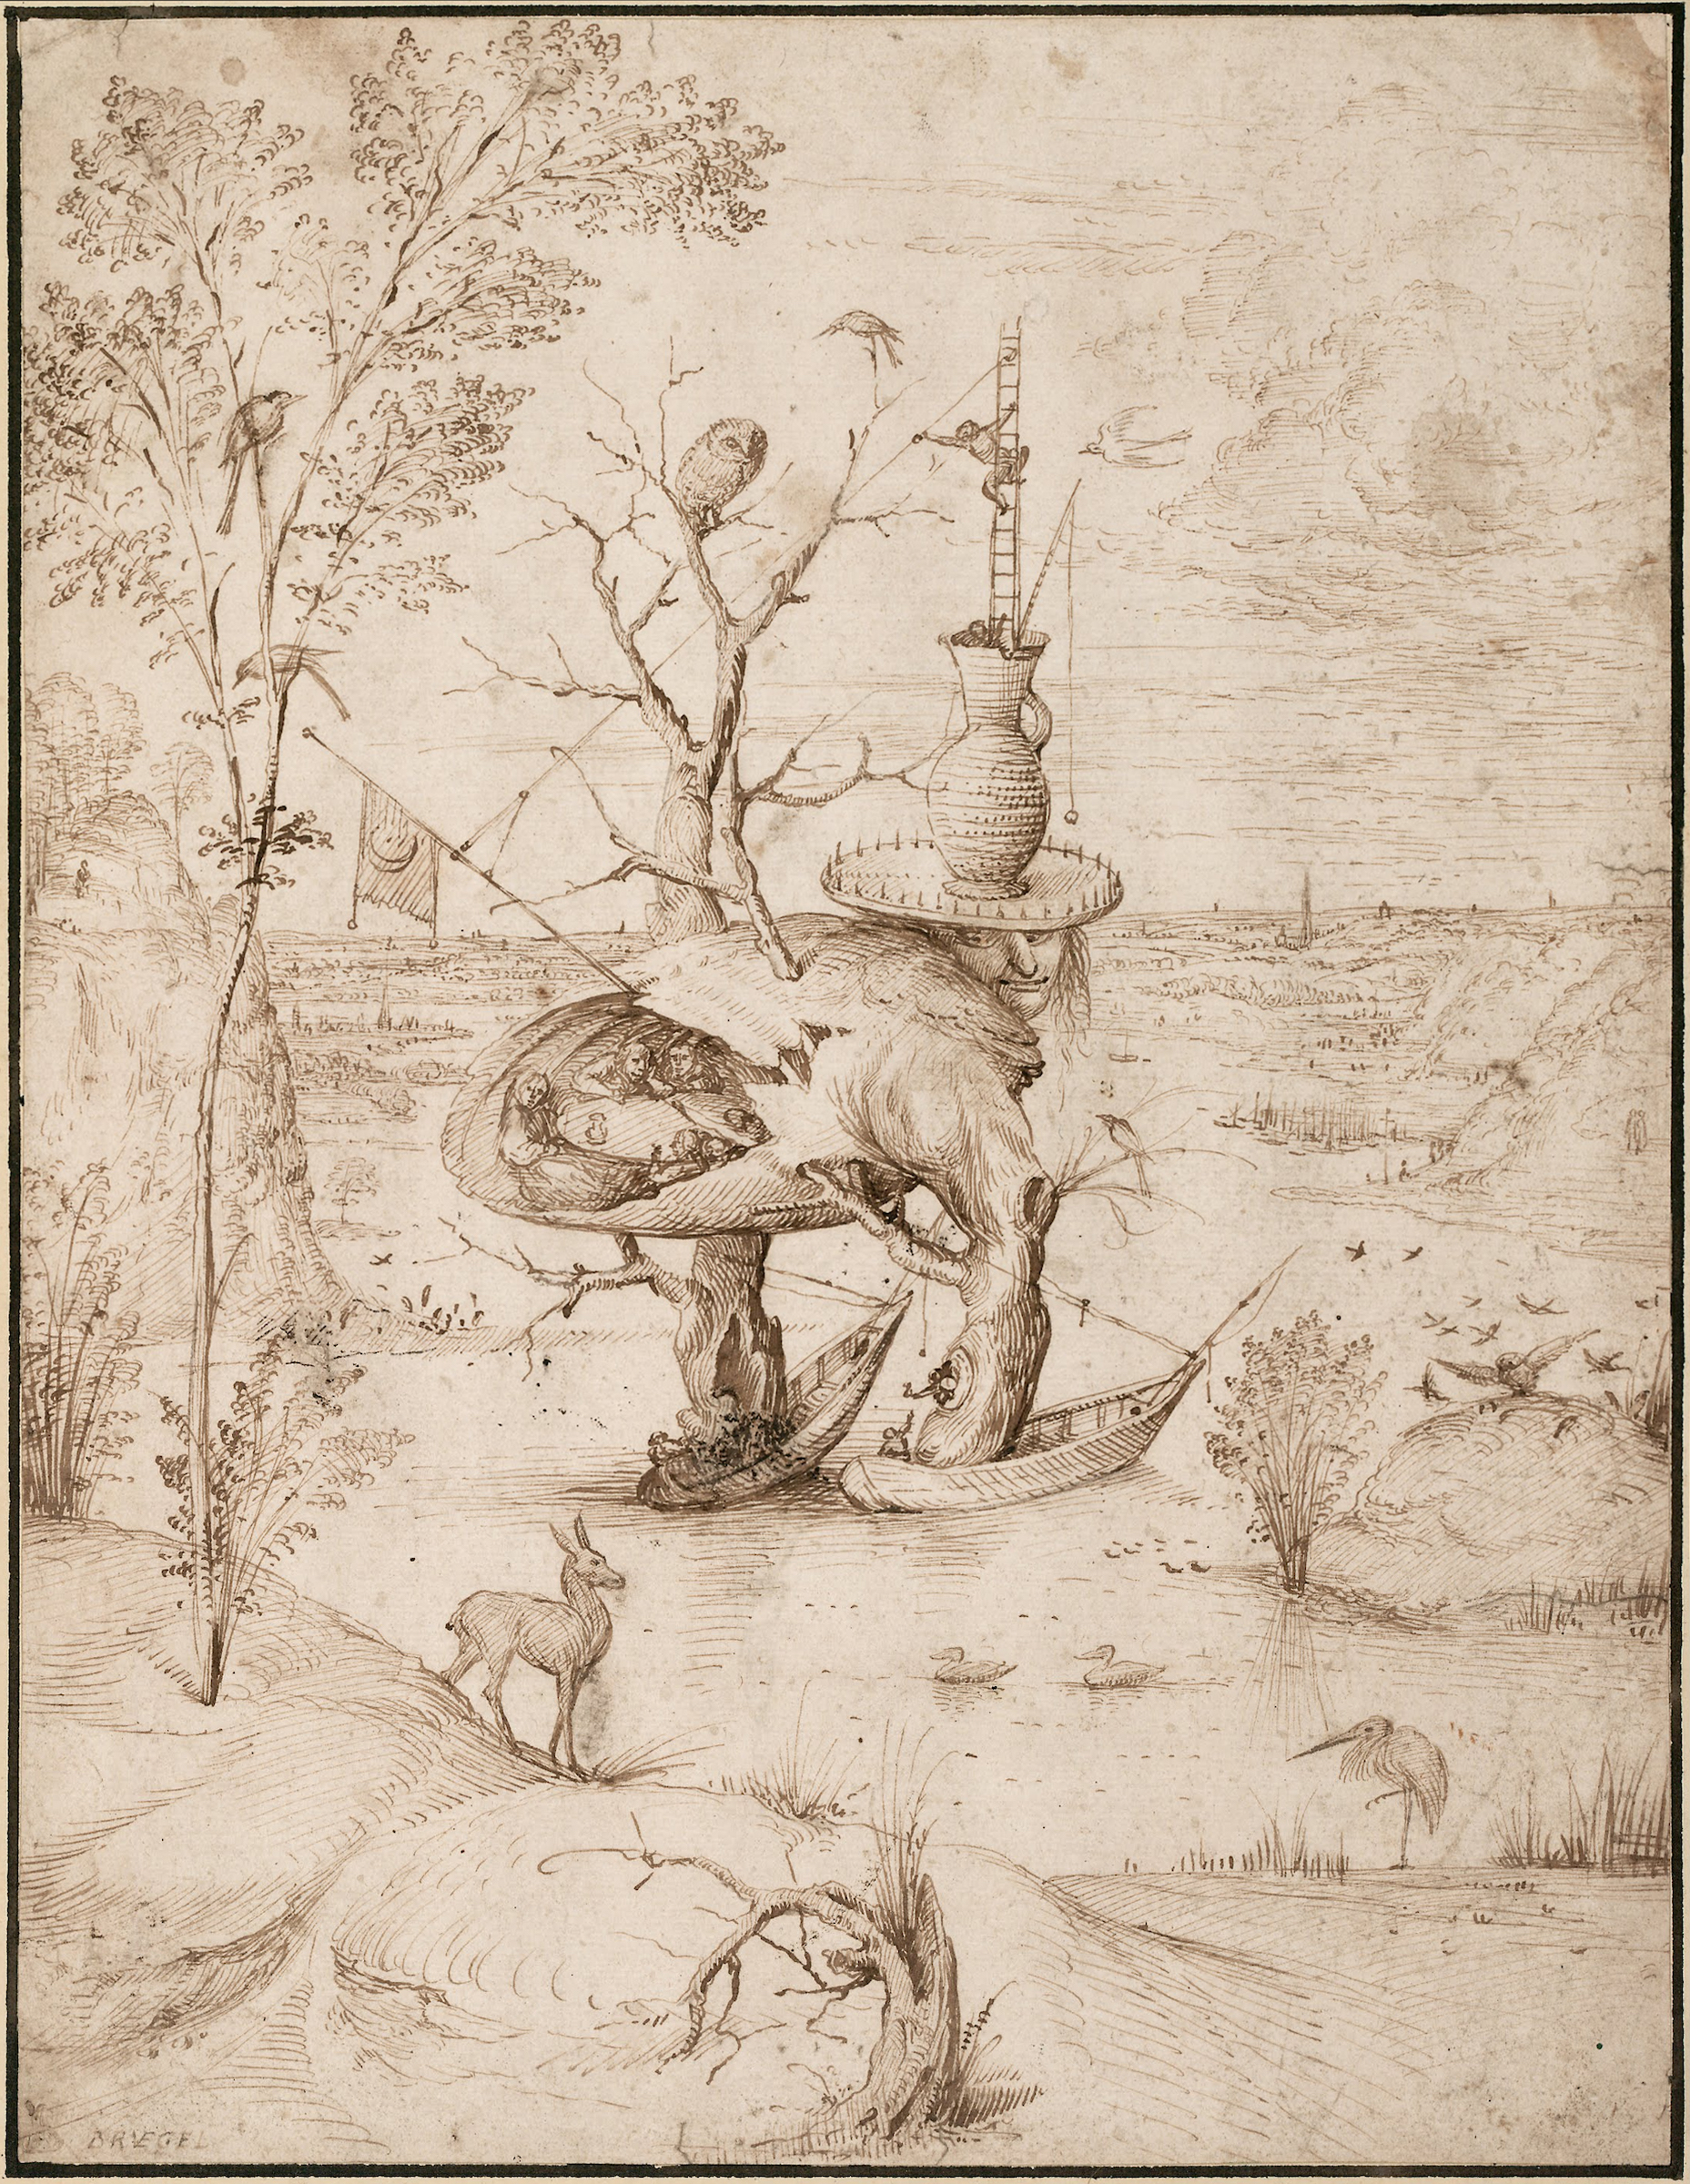 Człowiek-drzewo by Hieronymus Bosch - 1500 - 27,7 x 21,1 cm 